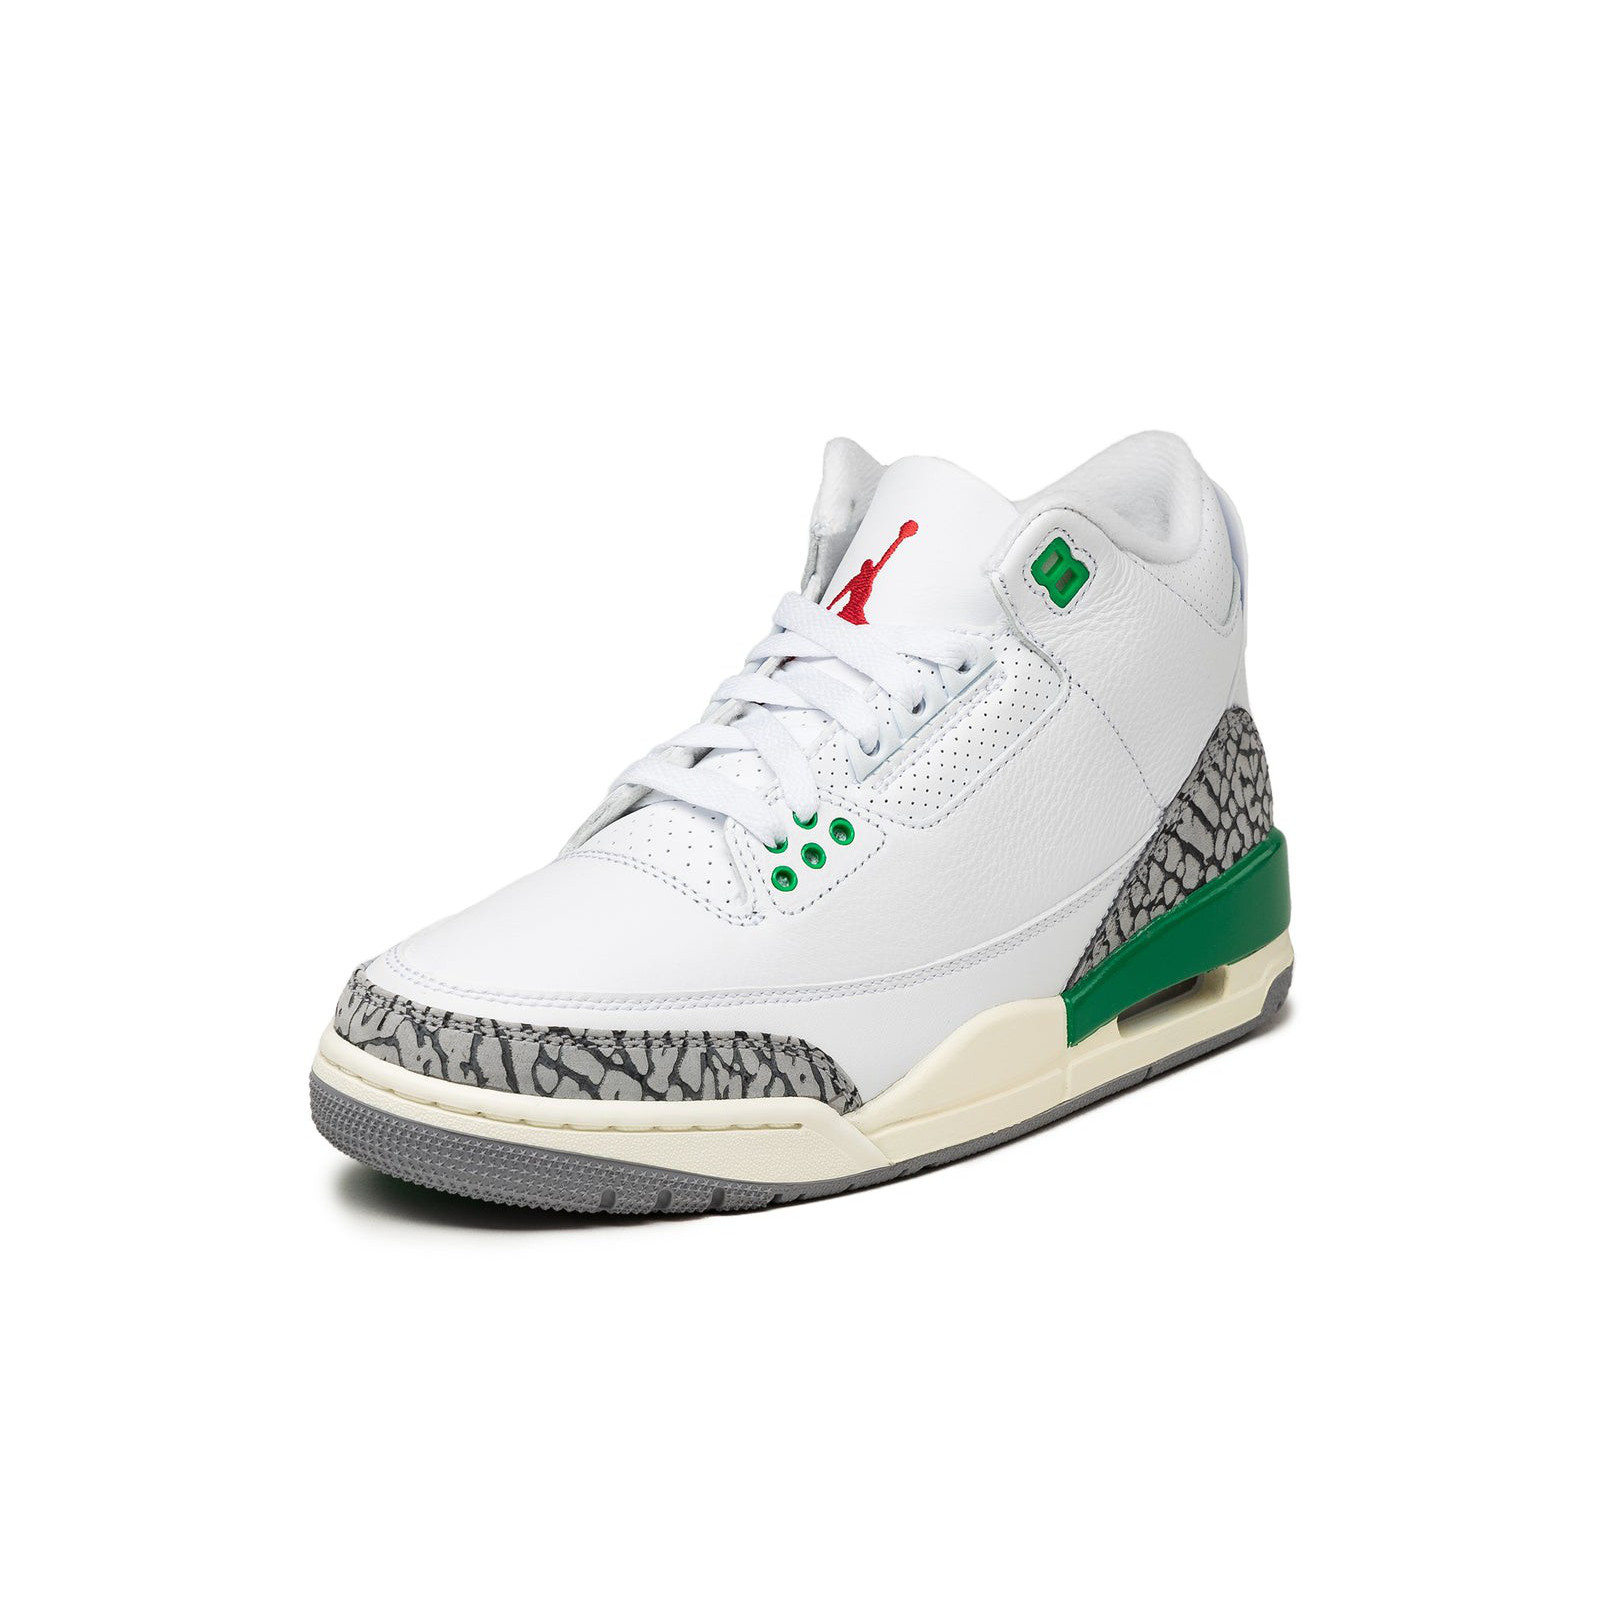 Air Jordan 3 Retro
« Lucky Green »